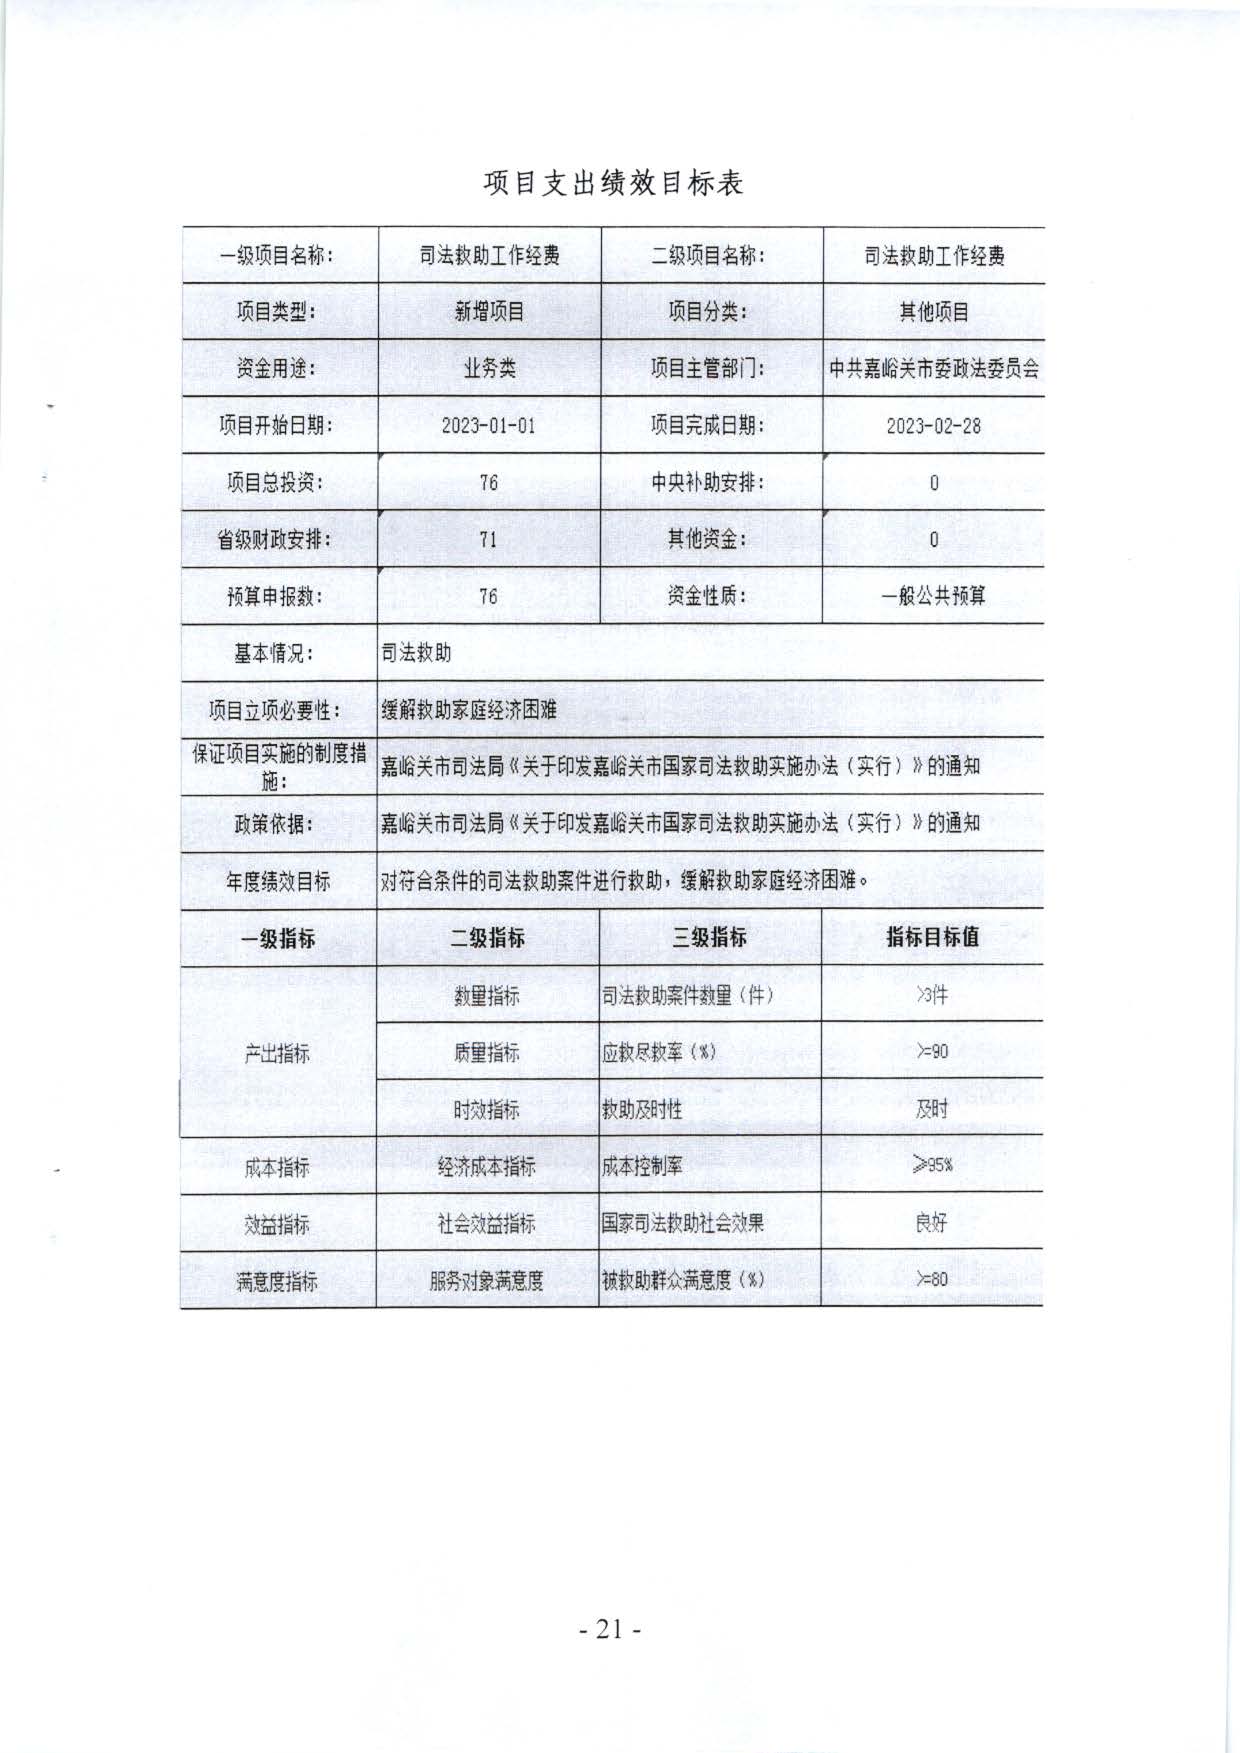 嘉峪关市委政法委2023年预算公开情况说明(1)_页面_21